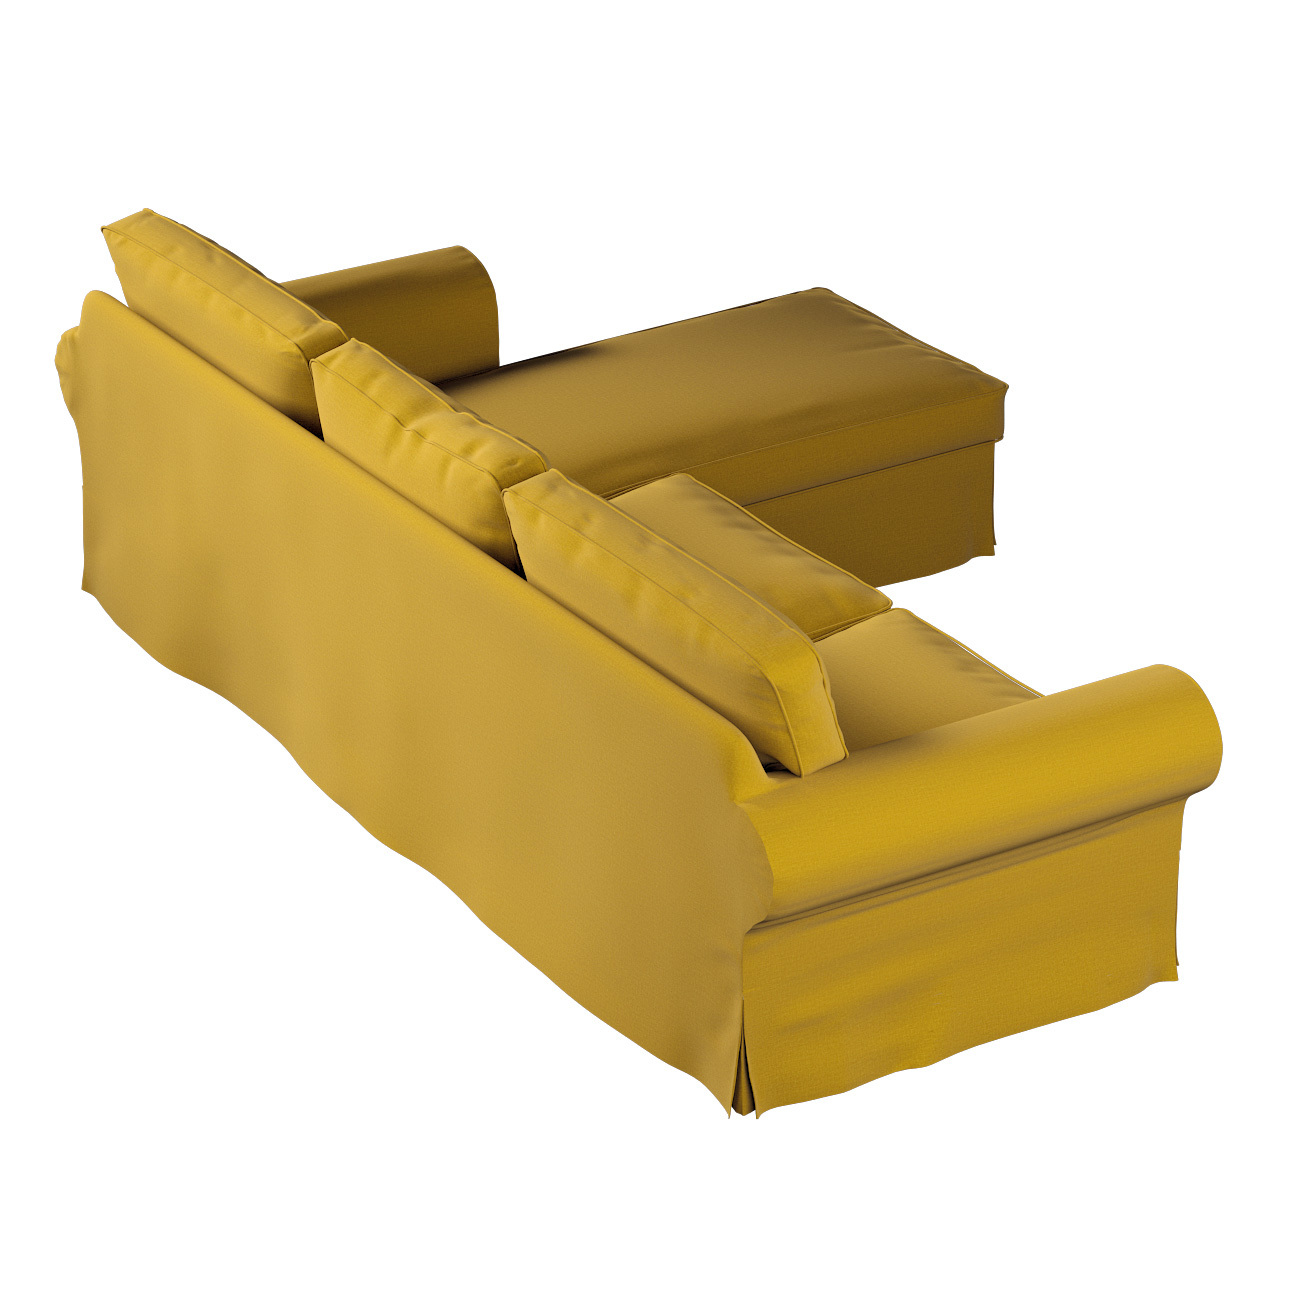 Bezug für Ektorp 2-Sitzer Sofa mit Recamiere, honiggelb, Ektorp 2-Sitzer So günstig online kaufen